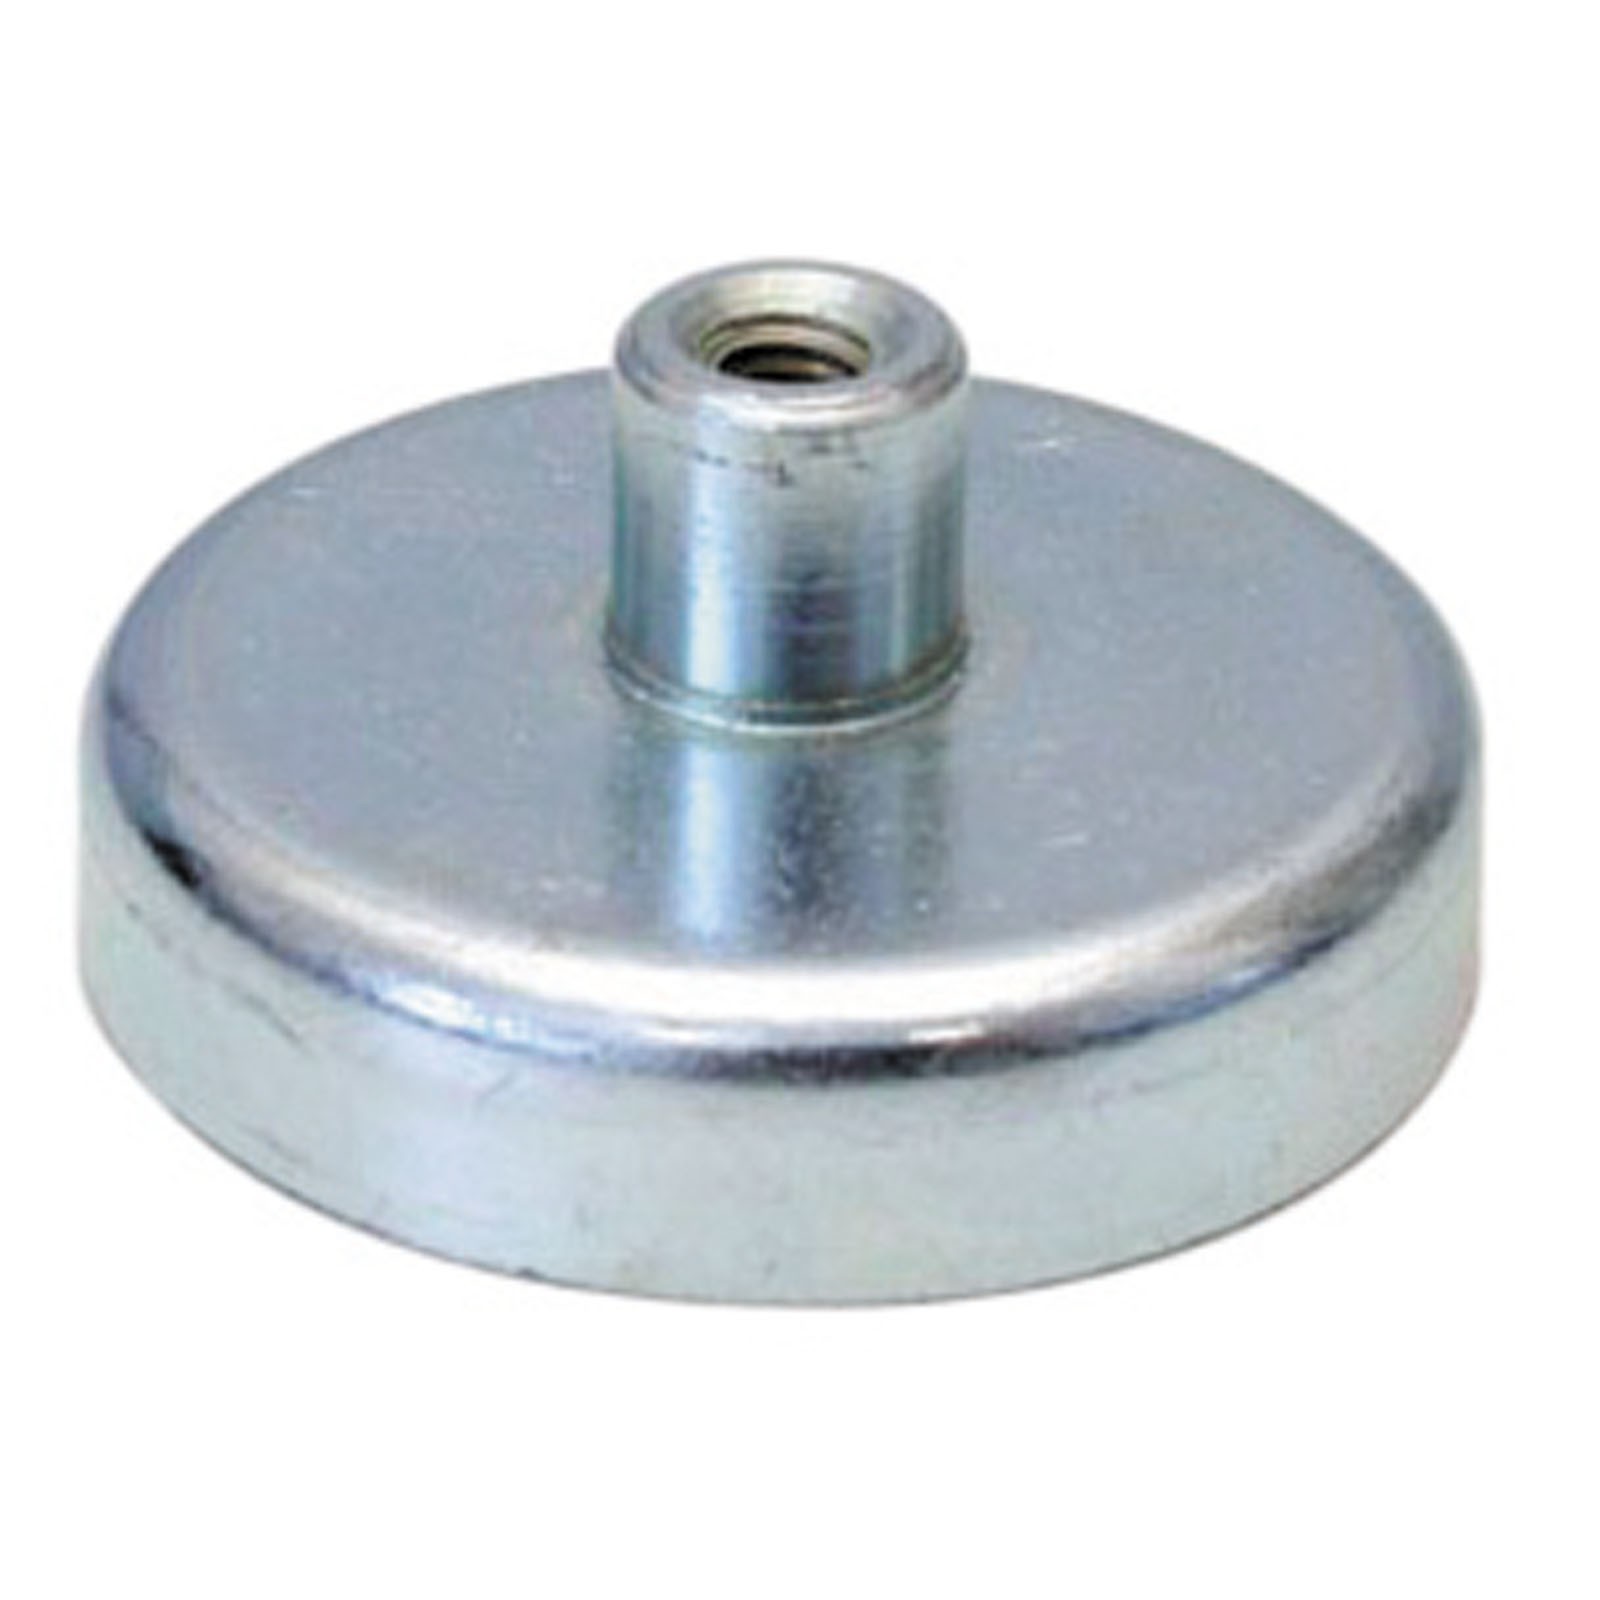 Flachgreifer Magnet mit Gewinde - Magnetfuß, Topfmagnet - div. Größen 10 - 125mm Größe:40.0 mm von Rimag